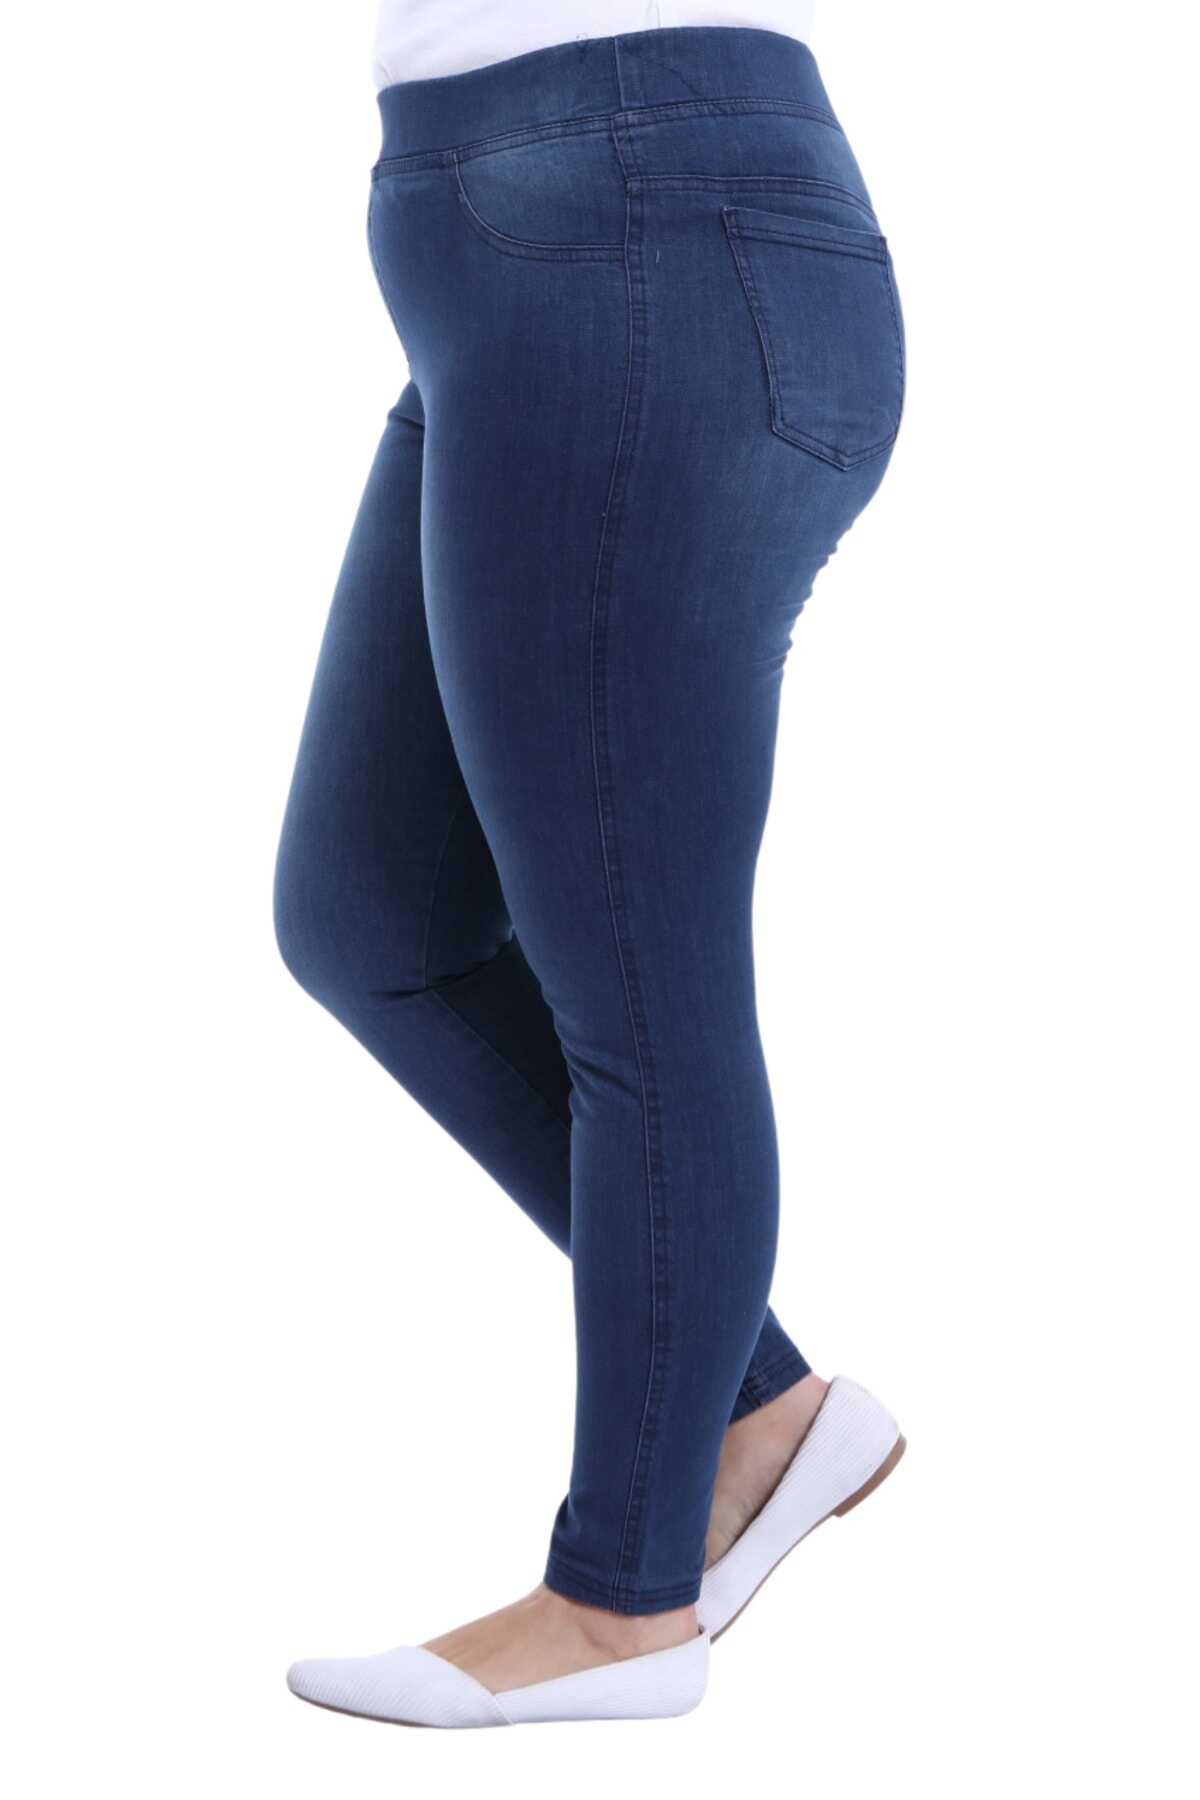 شلوار جین لوله ای کمر کش سایز بزرگ زنانه آبی تیره برند AZEM 